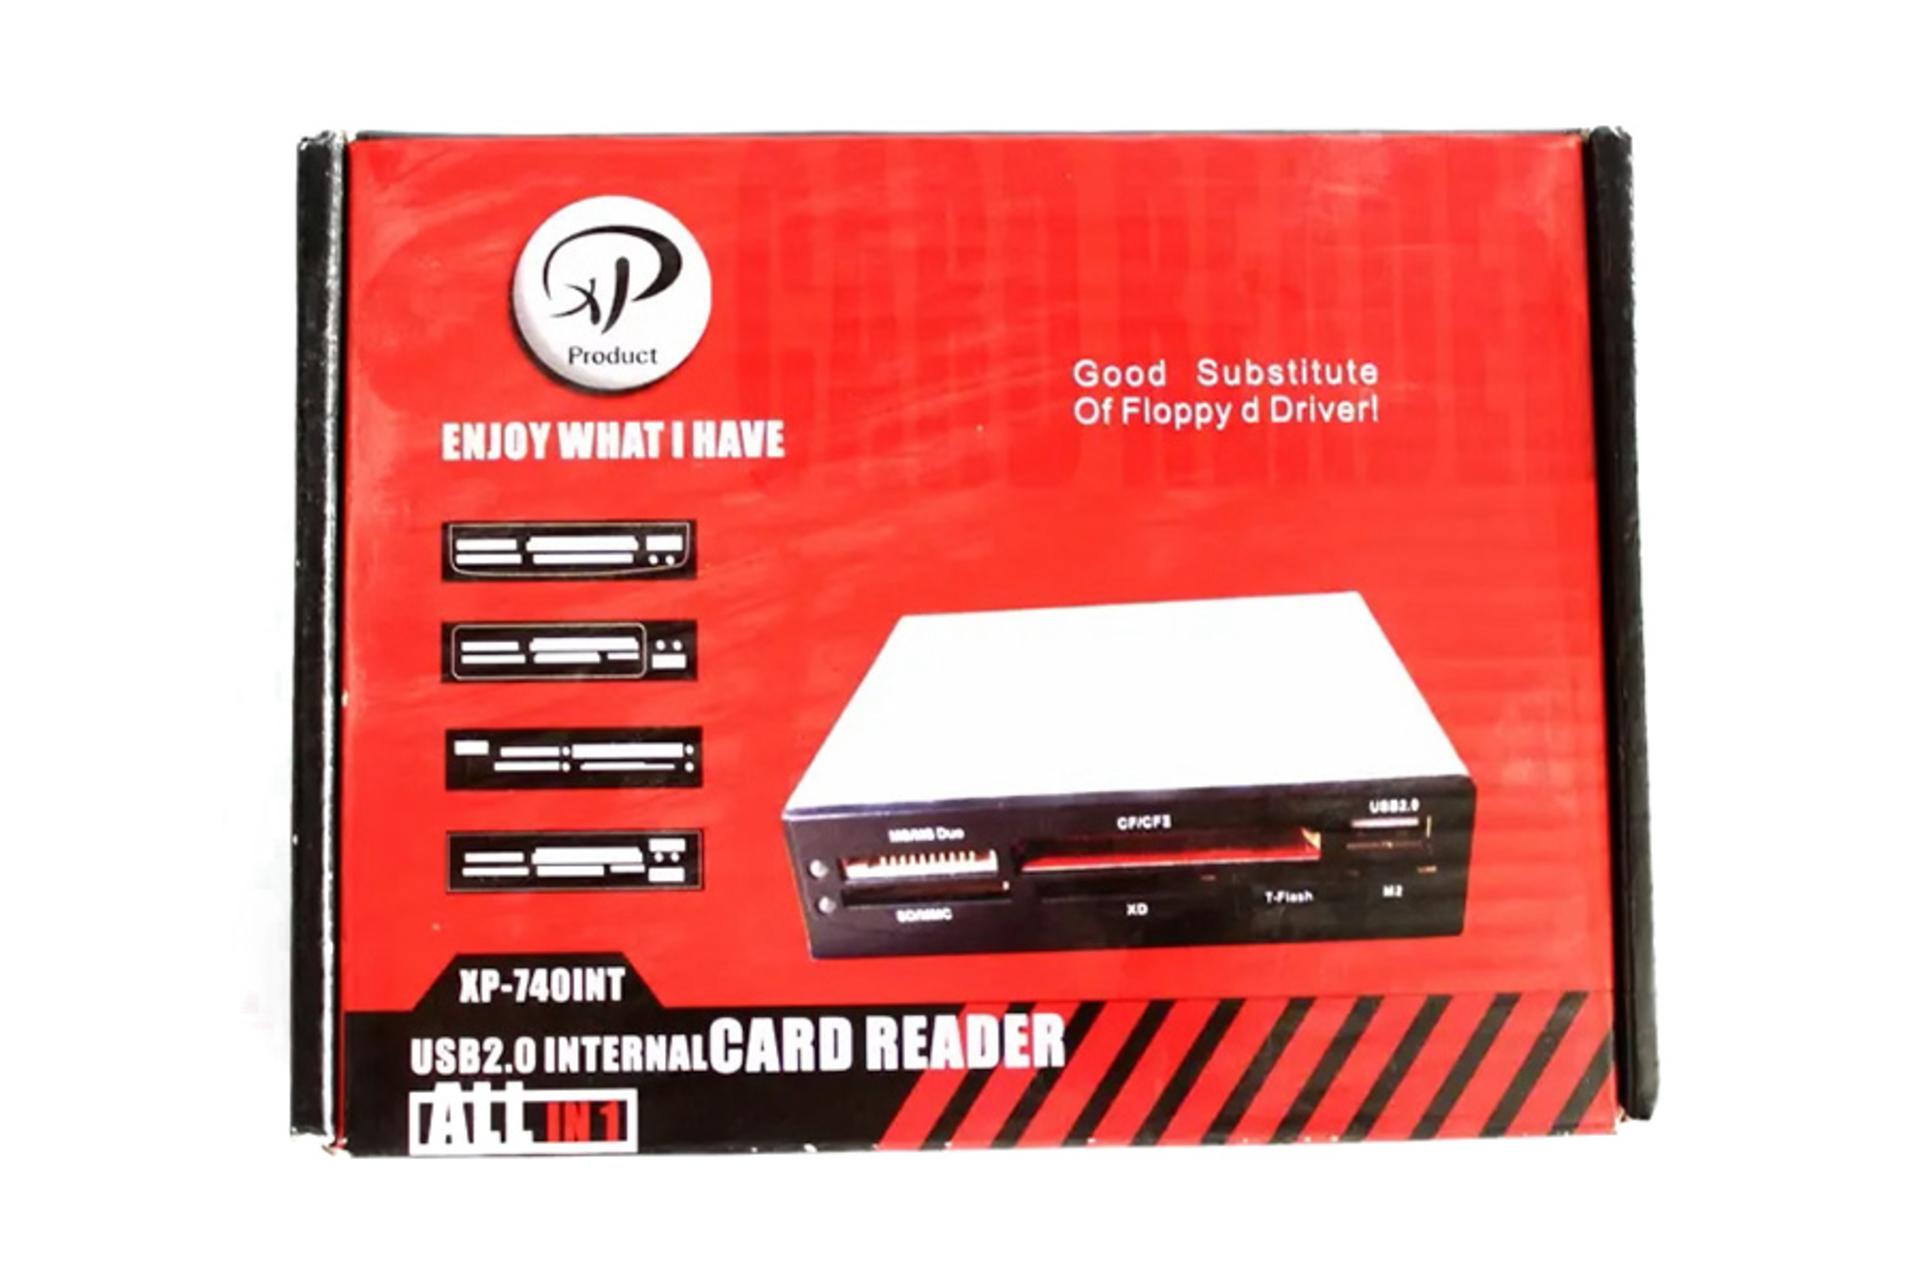 جعبه کارت خوان ایکس پی پروداکت XP Product XP-740INT